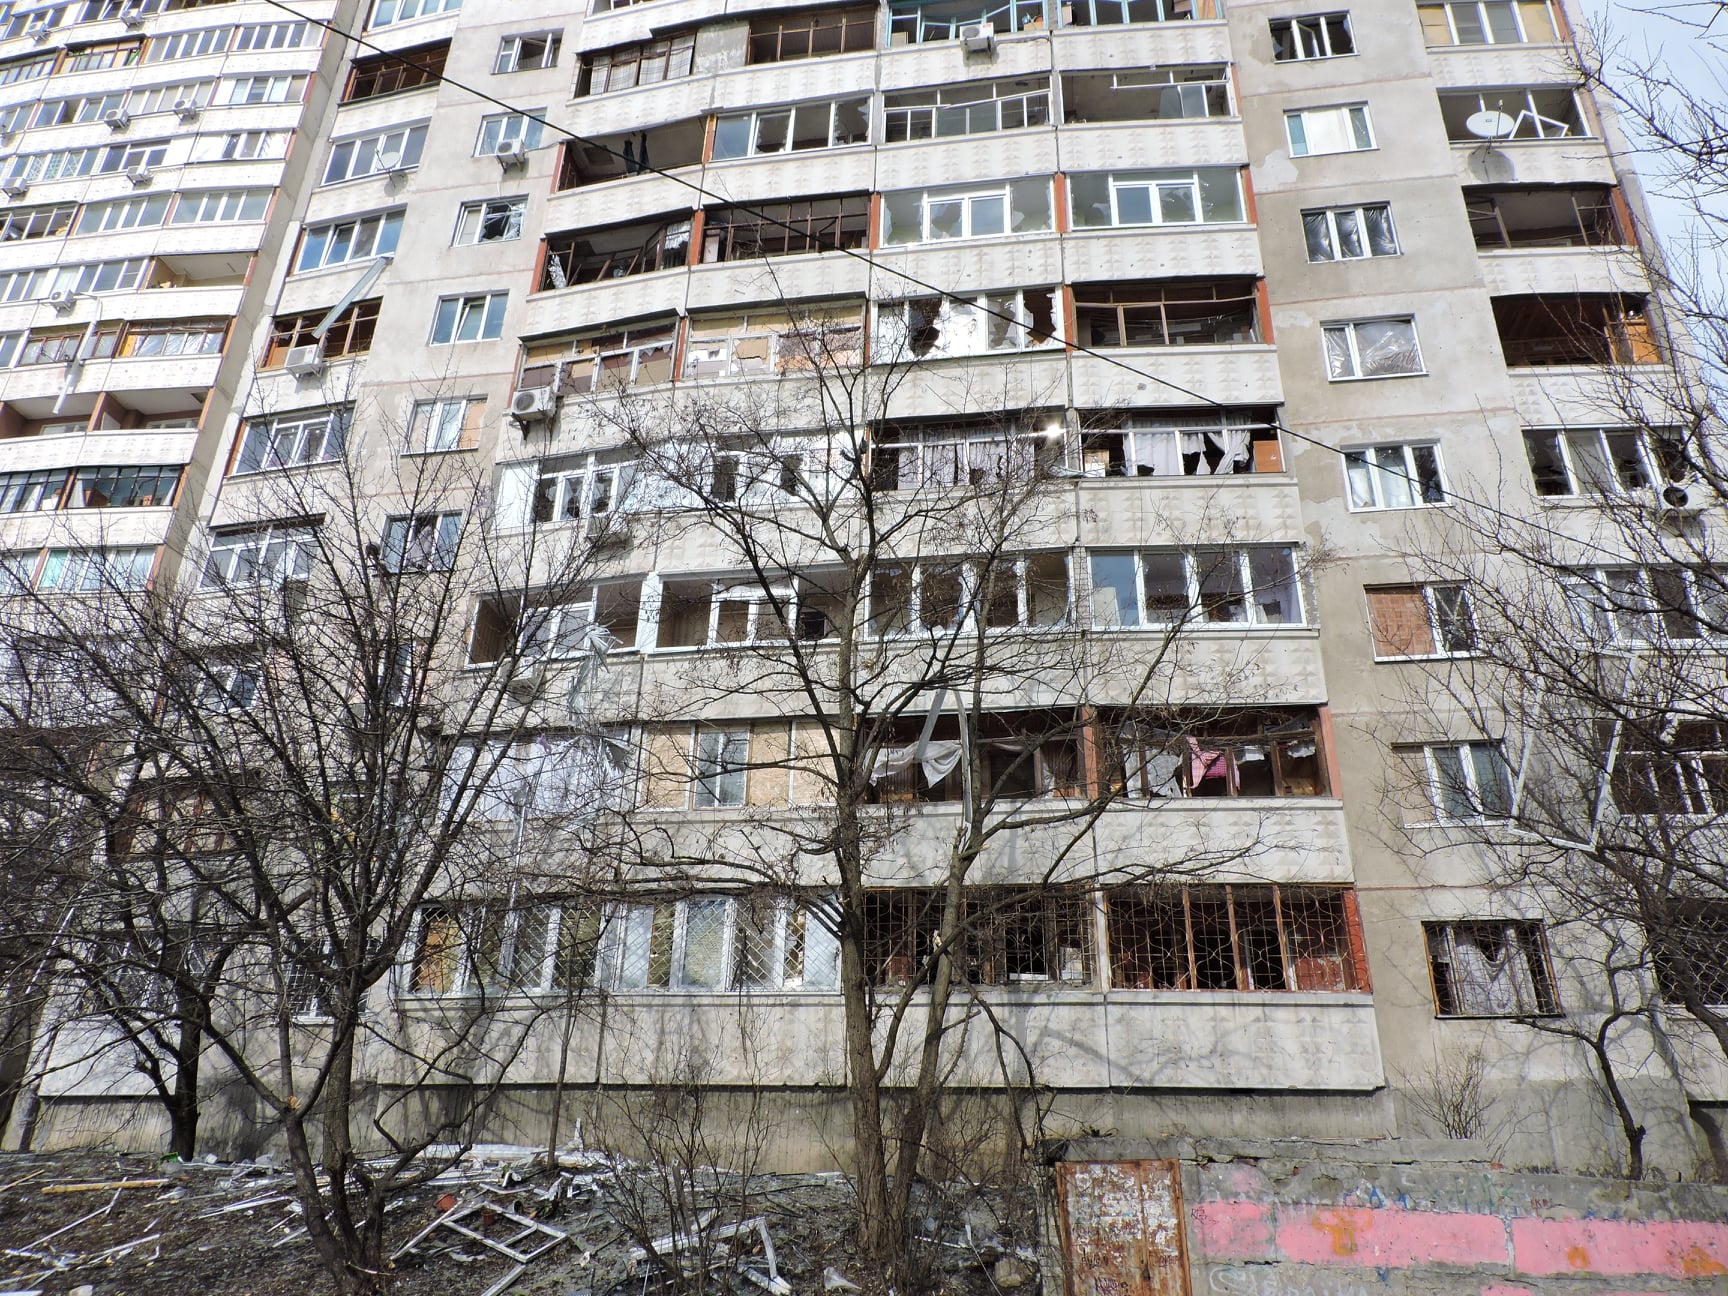 Один з пошкоджених будинків на Салтівці, березень 2022 року. Фото: Сергій Петров, CC BY-SA 4.0.